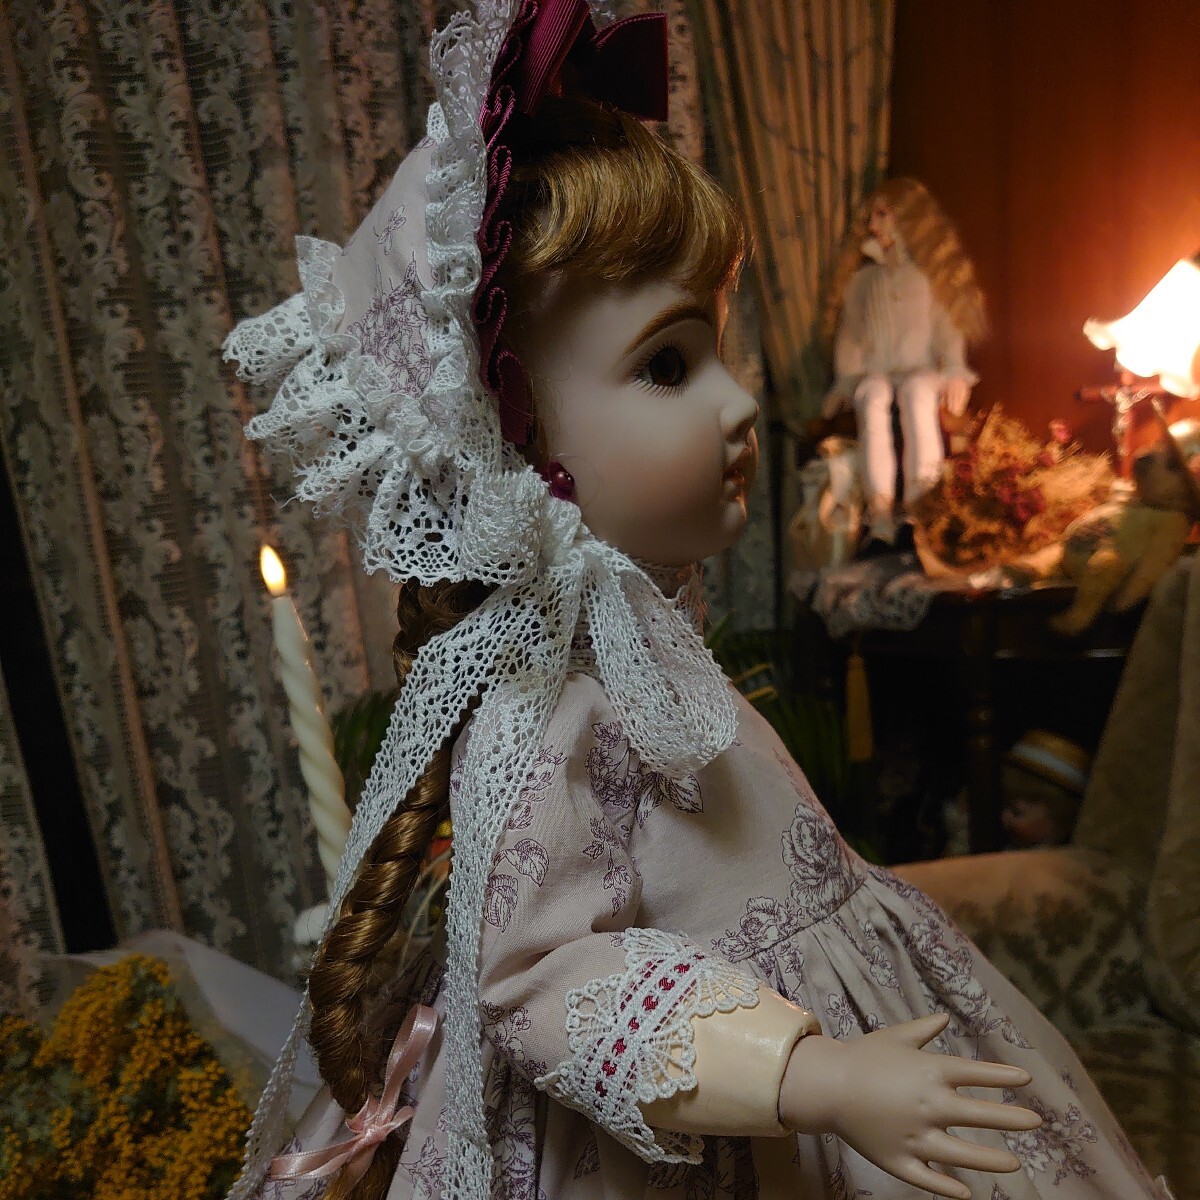  doll for dress [ kind rose ]